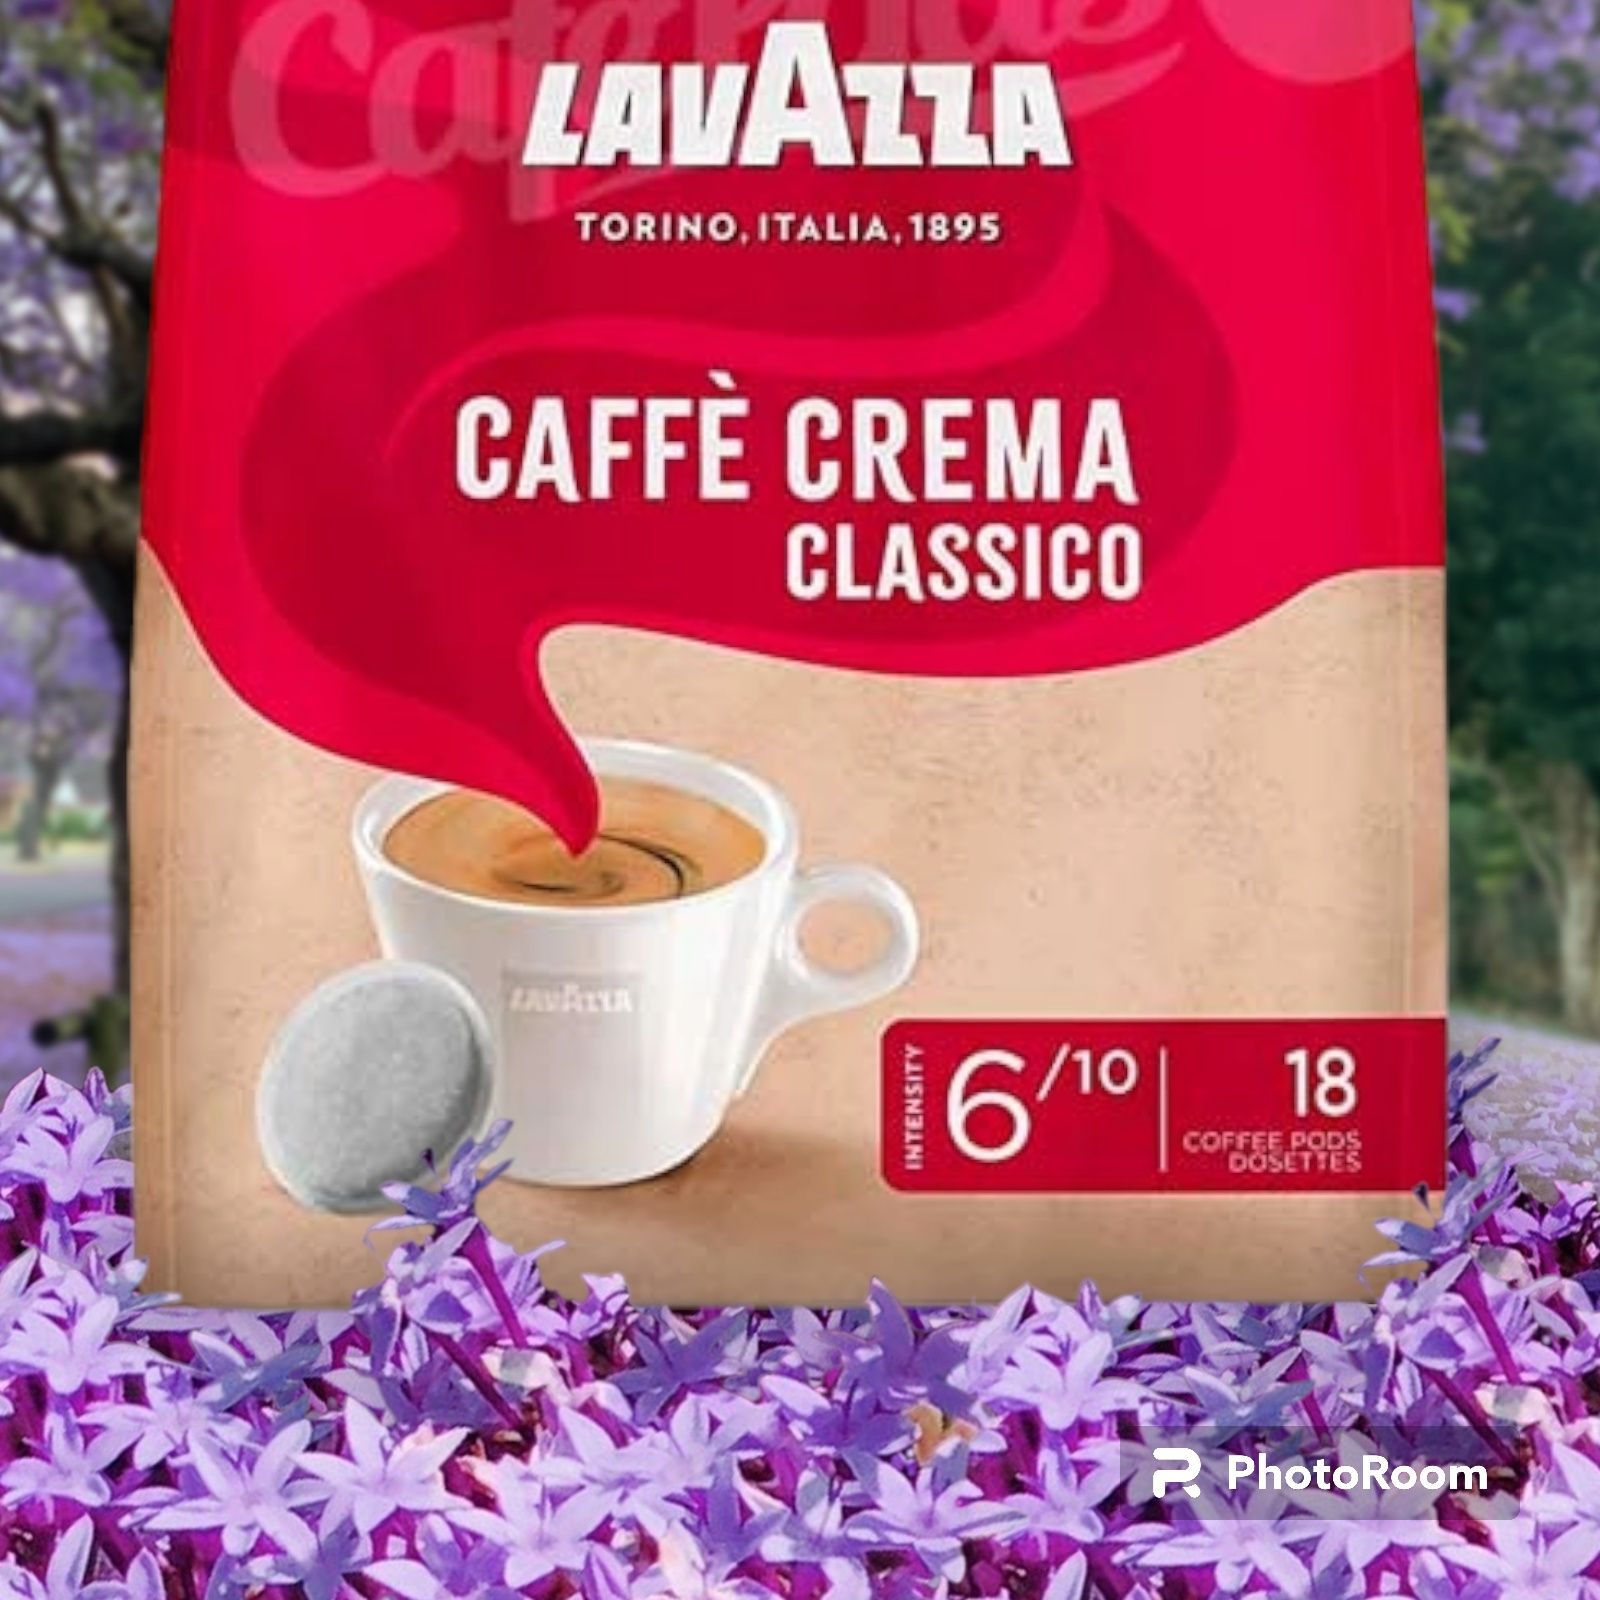 Kawa Lavazza Caffe Crema Classico 18 pads